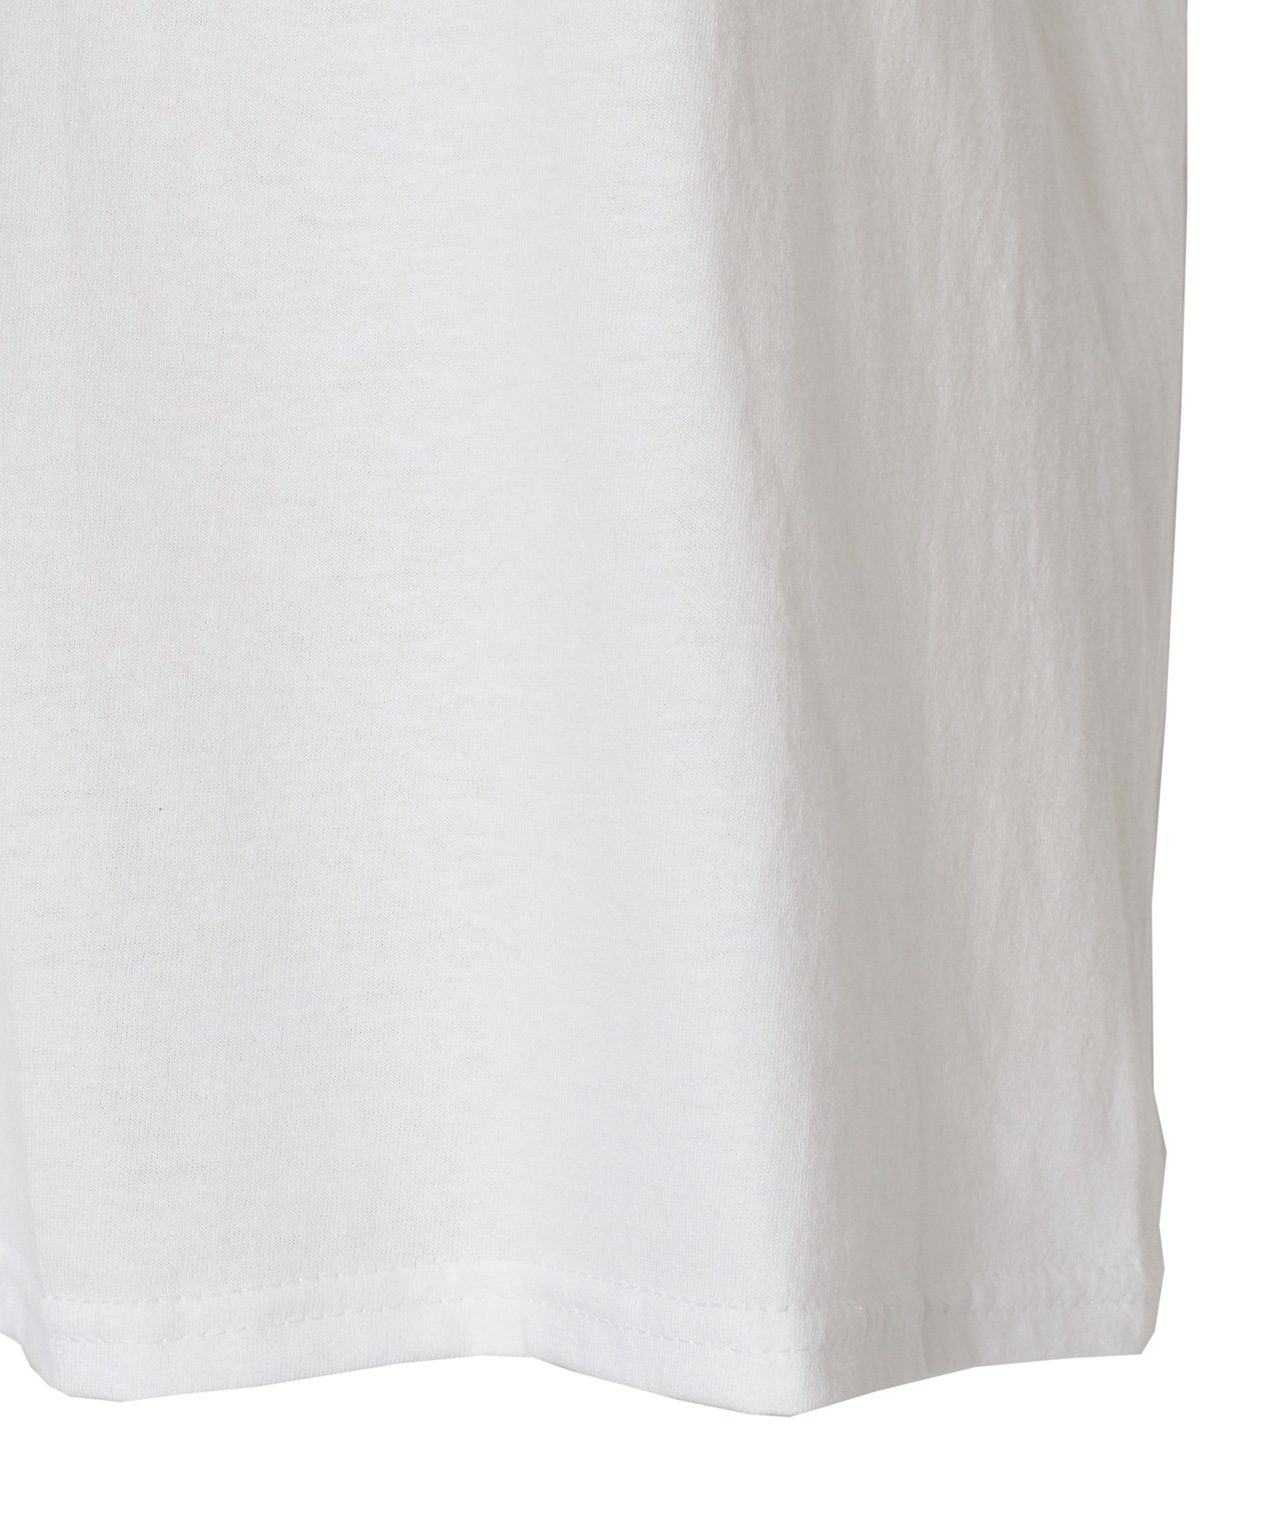 【別注】FRUIT OF THE LOOM/ビッグロゴ刺繍パックTシャツ 詳細画像 ホワイト/グレー 7